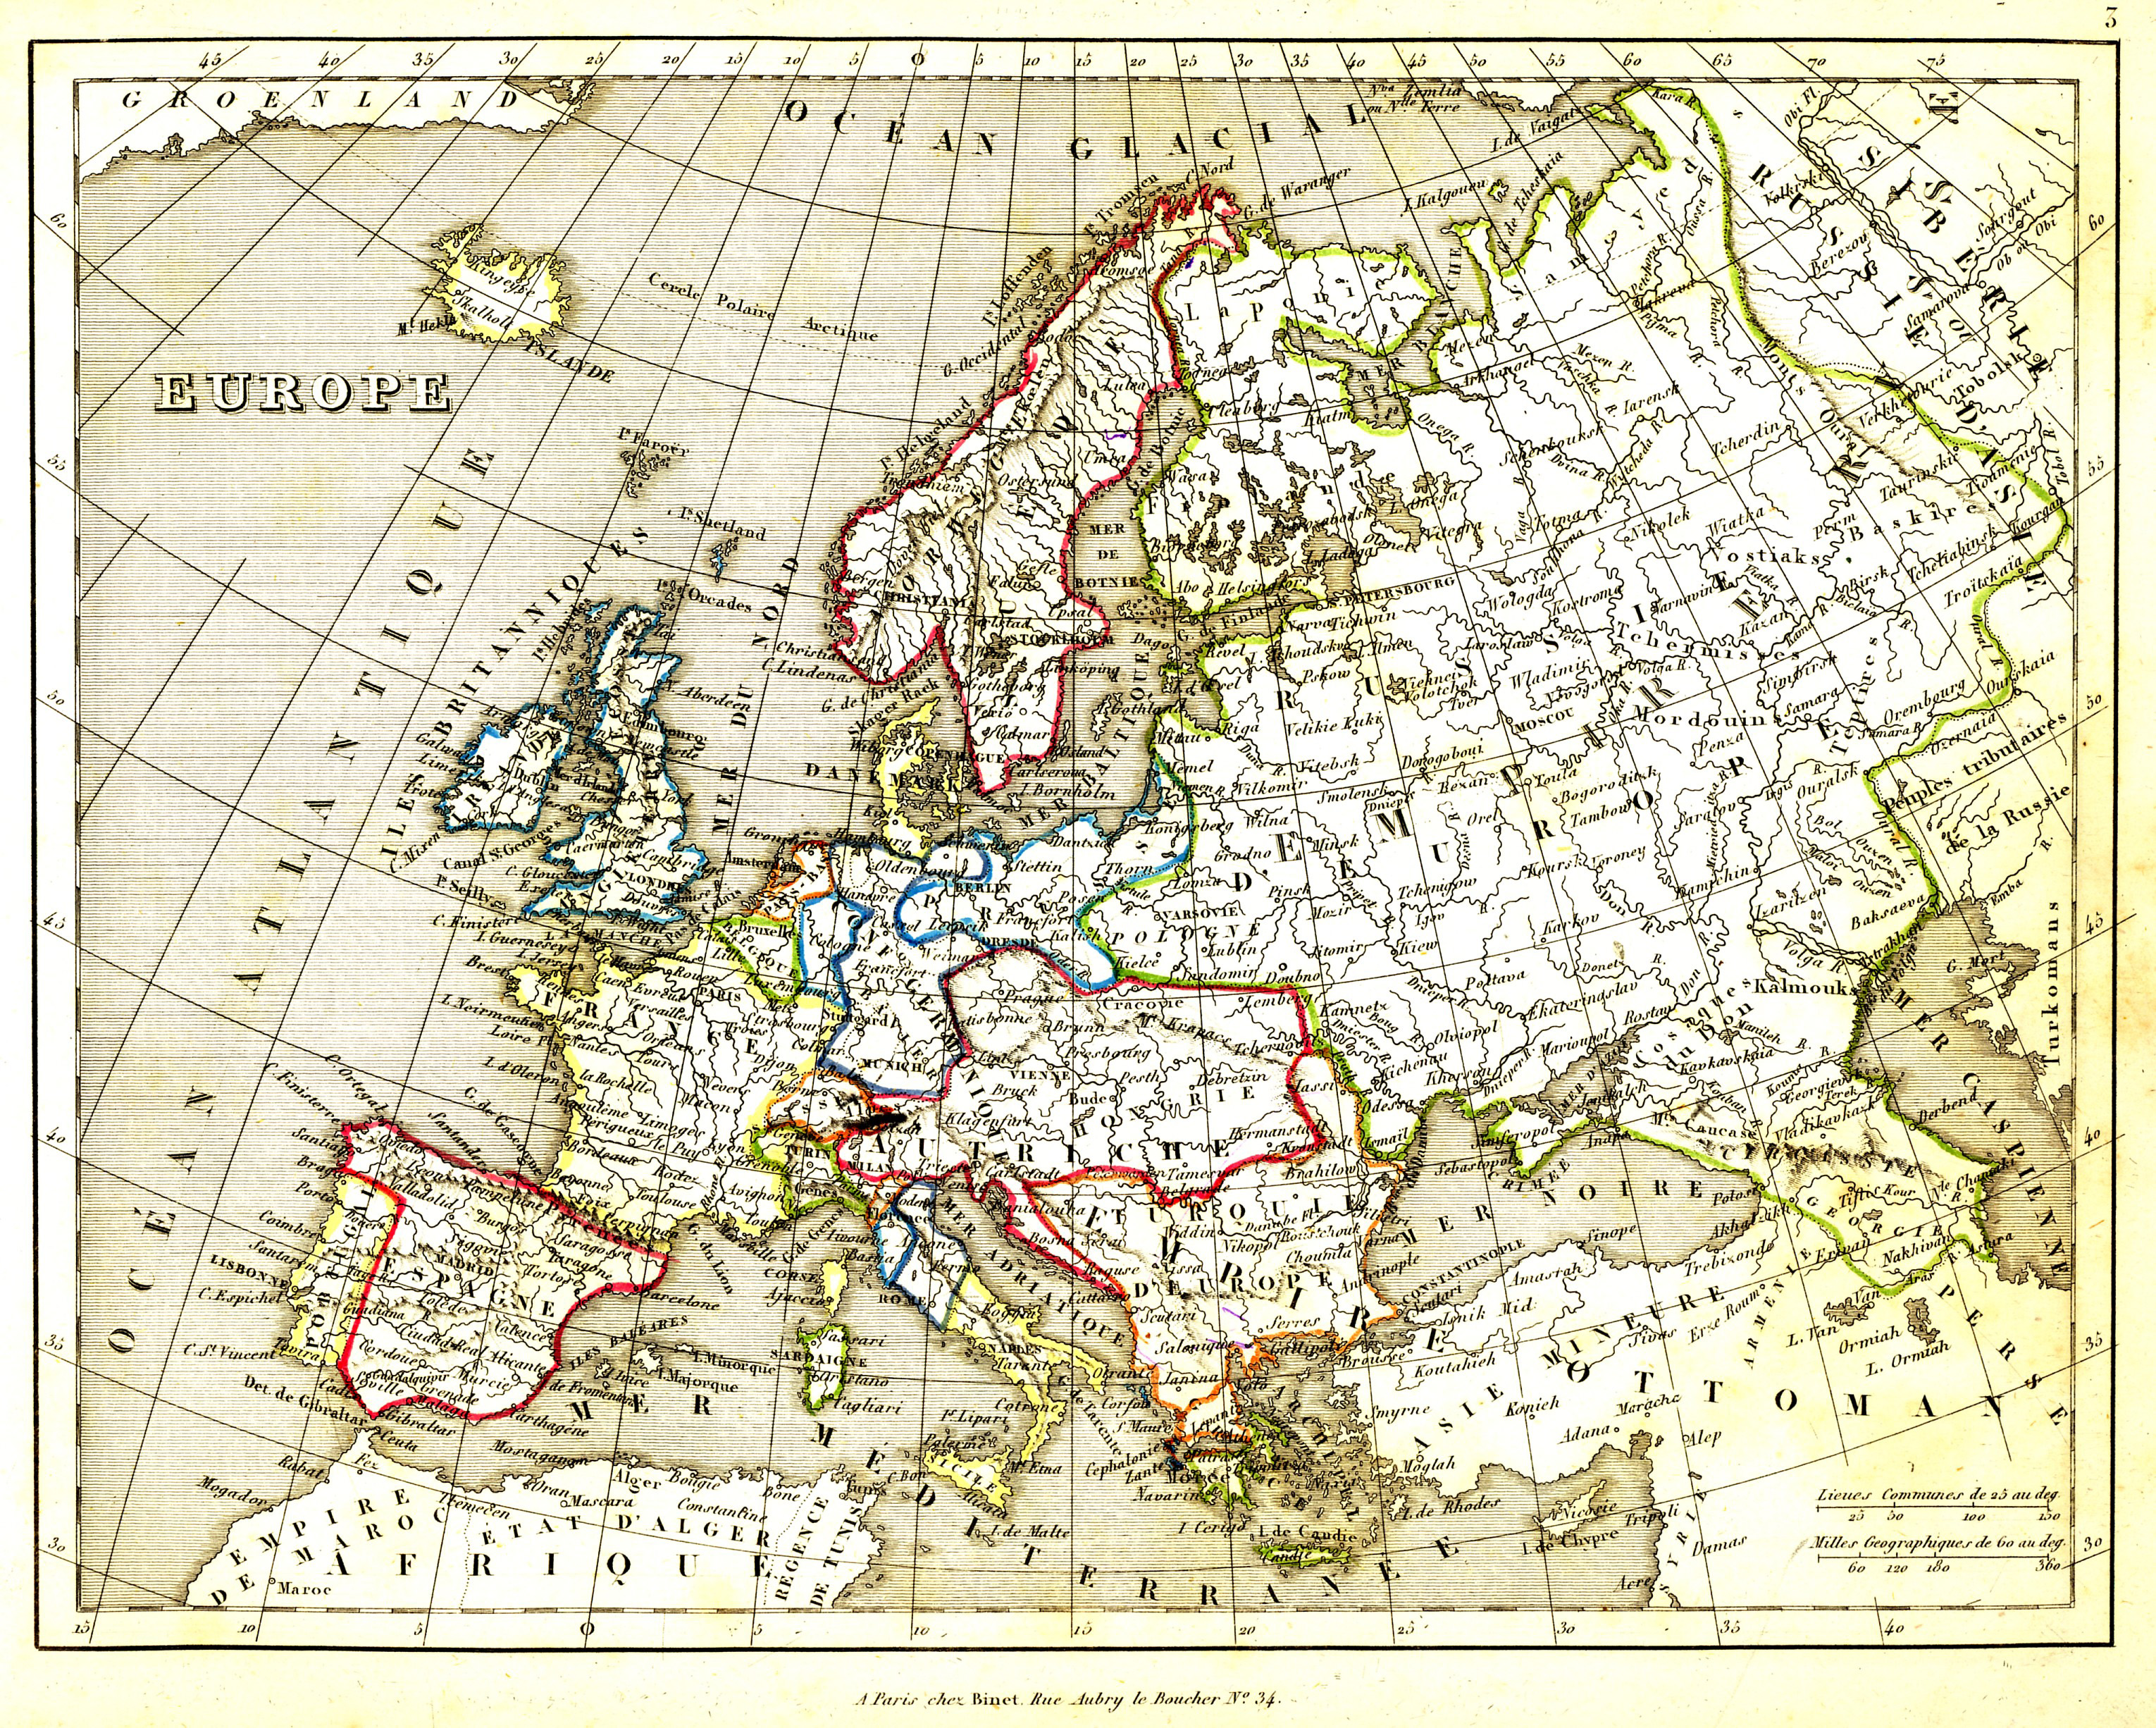 binet_europe_map_1836.jpg